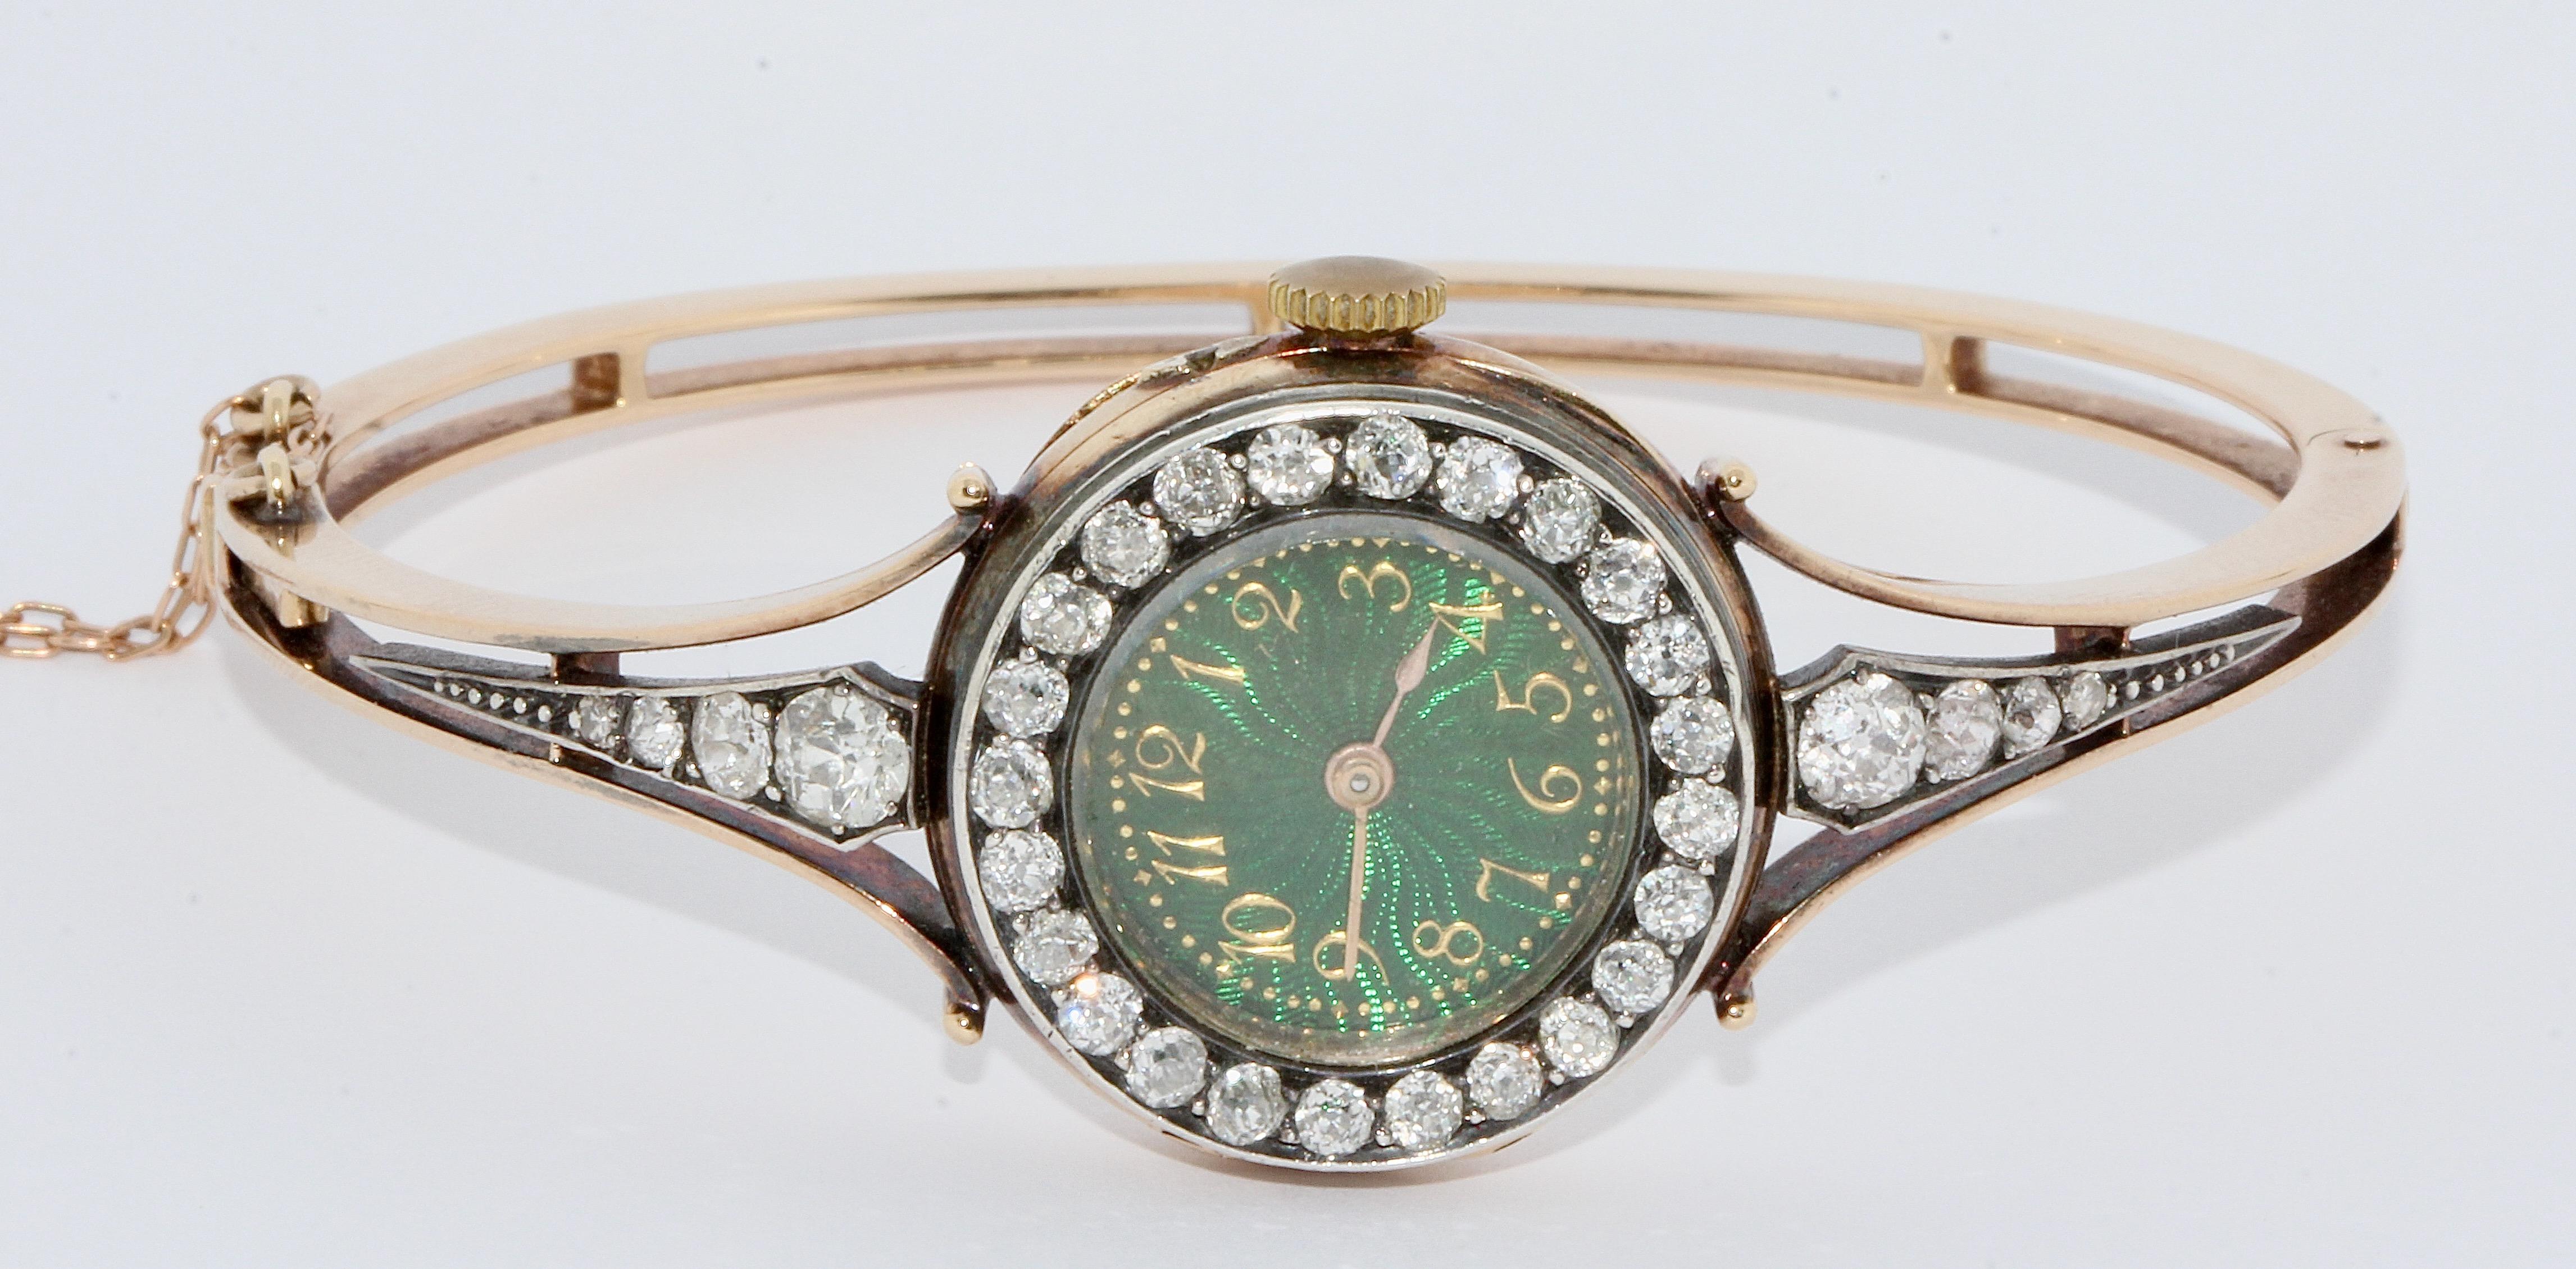 Magnifique montre-bracelet de dame en or ancien avec diamants et cadran émaillé.


La montre est sertie d'un total de 32 diamants de taille ancienne.
Le magnifique cadran en émail vert avec des chiffres arabes dorés est saisissant.

Bracelet et étui